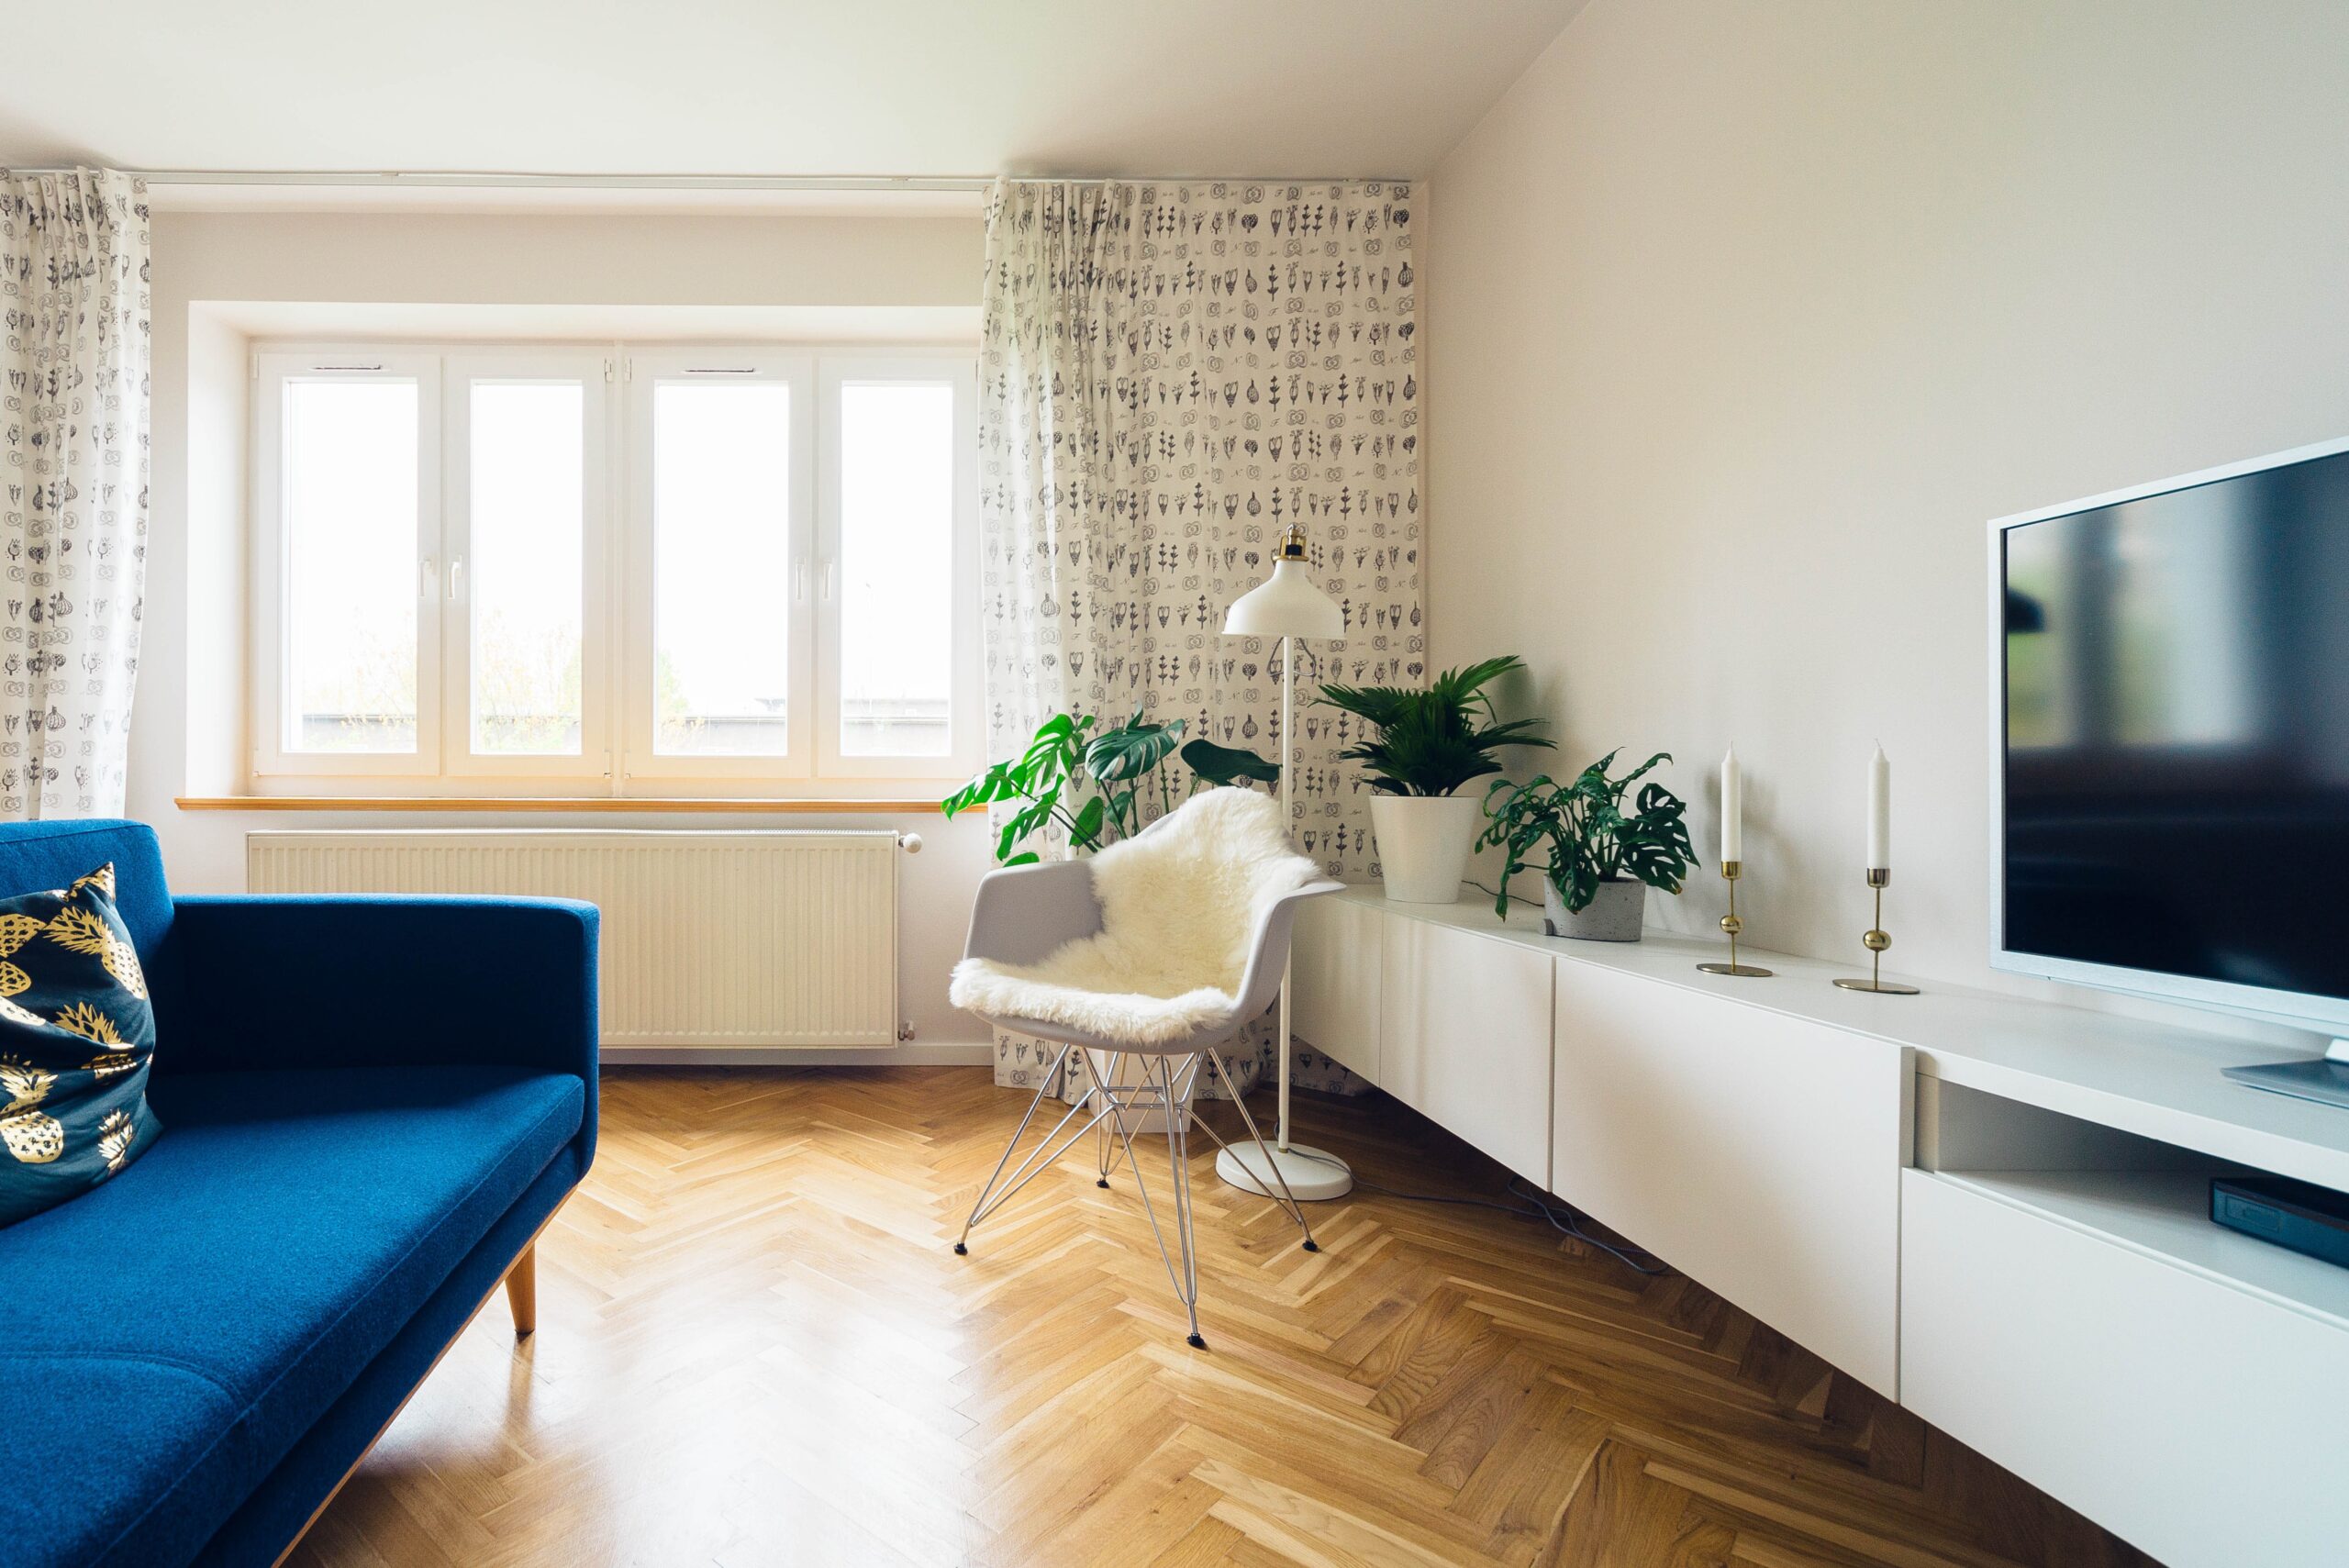 Modern, minimalist living room